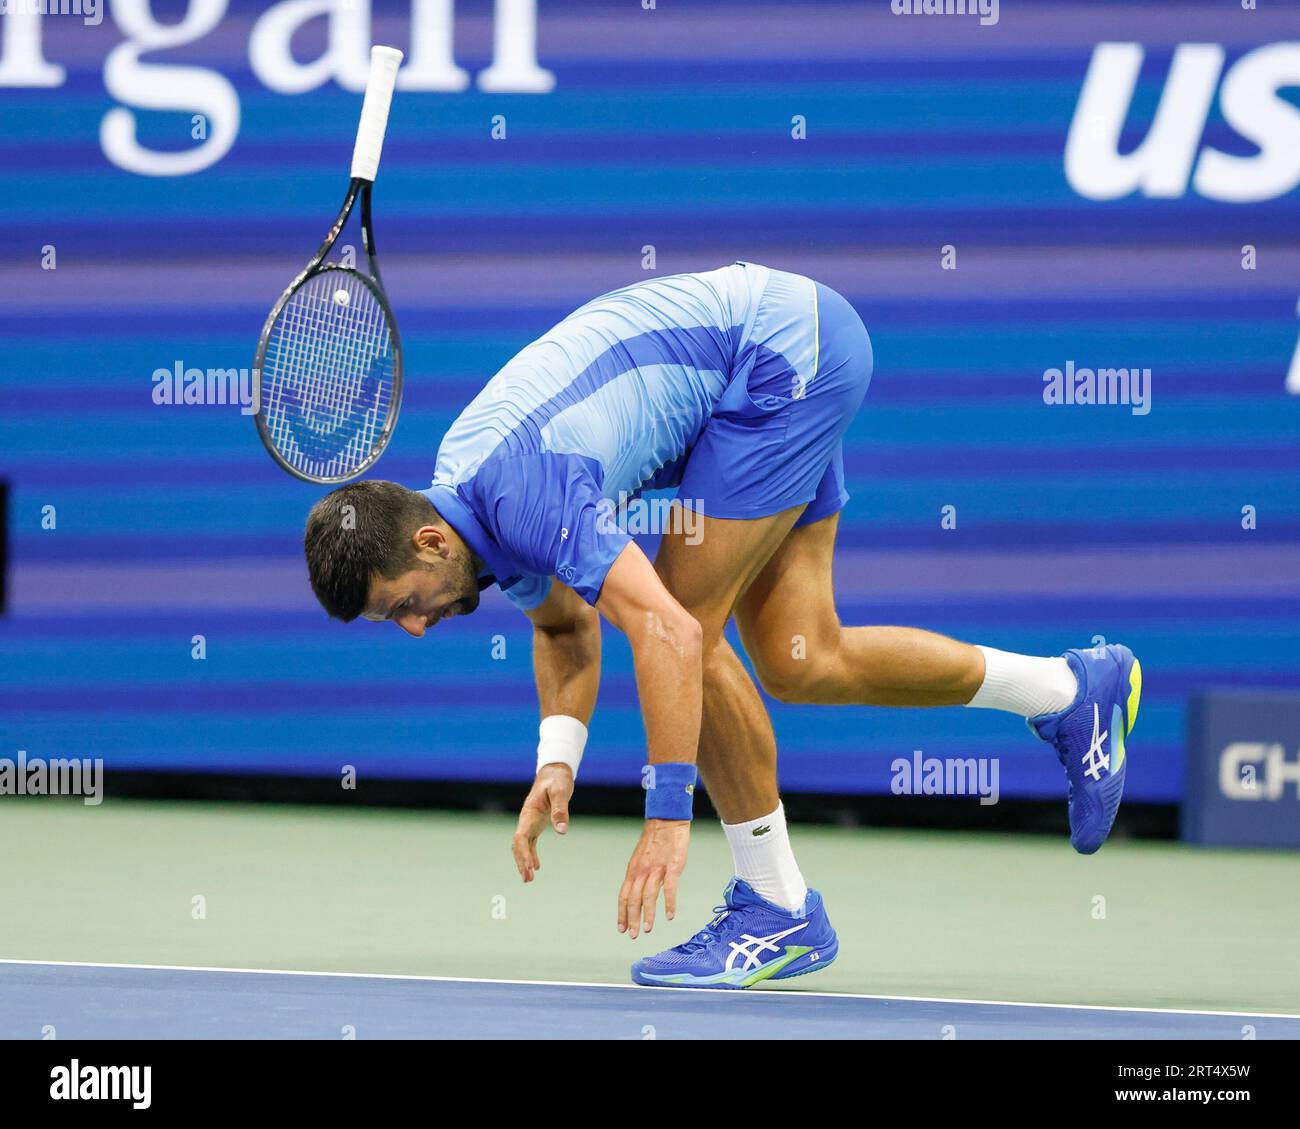 New York, États-Unis, 10 septembre 2023. Le joueur de tennis serbe Novak Djokovic fait un revers à l'US Open 2023 au Billie Jean King National tennis Center le dimanche 10 septembre 2023. © Juergen Hasenkopf / Alamy Live News Banque D'Images